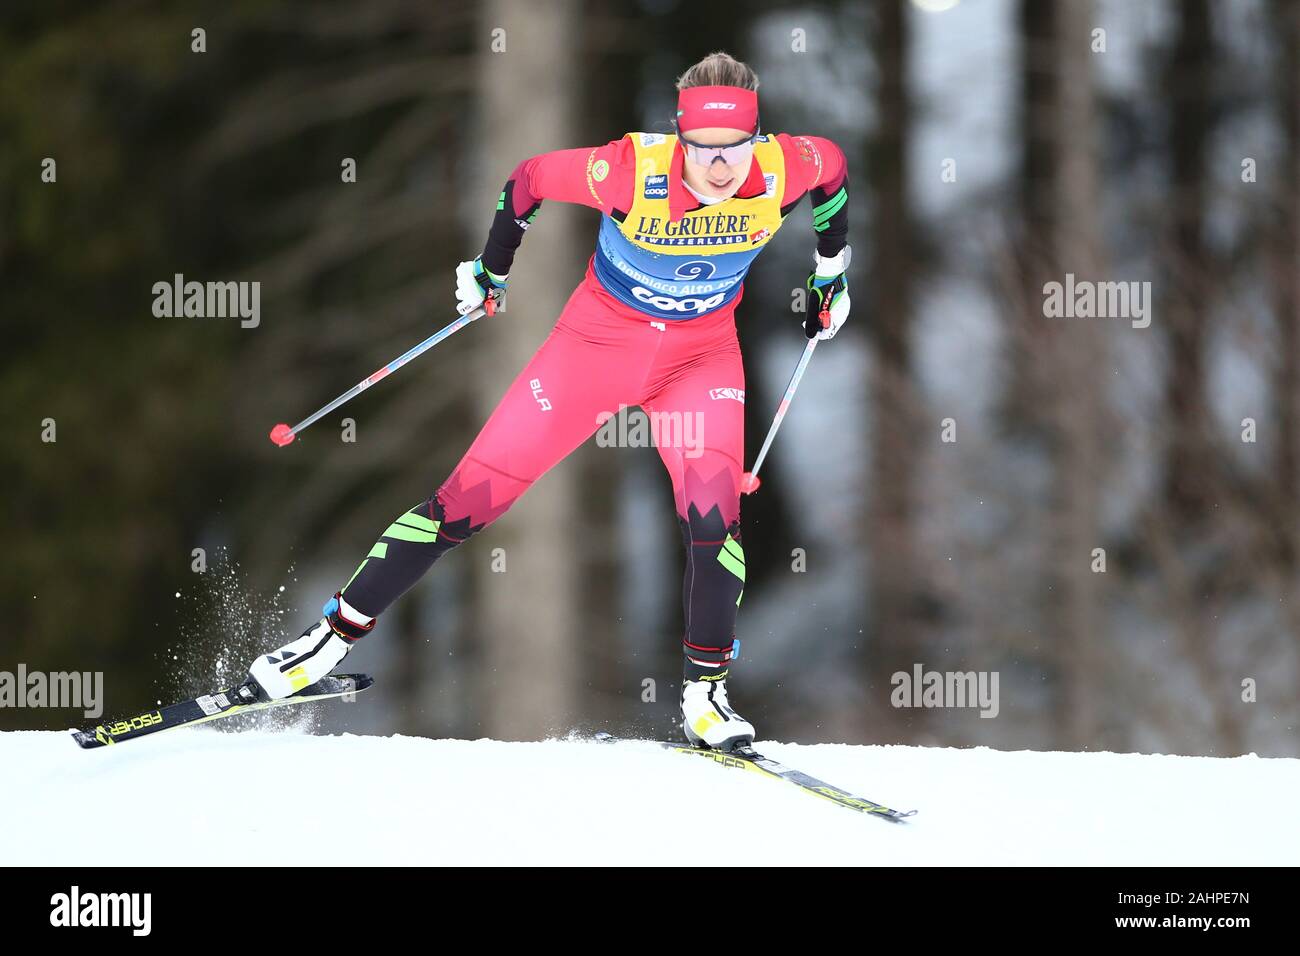 Polina Seronosova, BLR während der Frauen 15 km Intervall Start frei der FIS Tour de Ski - Langlauf Ski World Cup 2019-20 am 31 Dezember, 2019 in Toblach, Toblach, Italien. Foto: Pierre Teyssot/Espa-Images Stockfoto